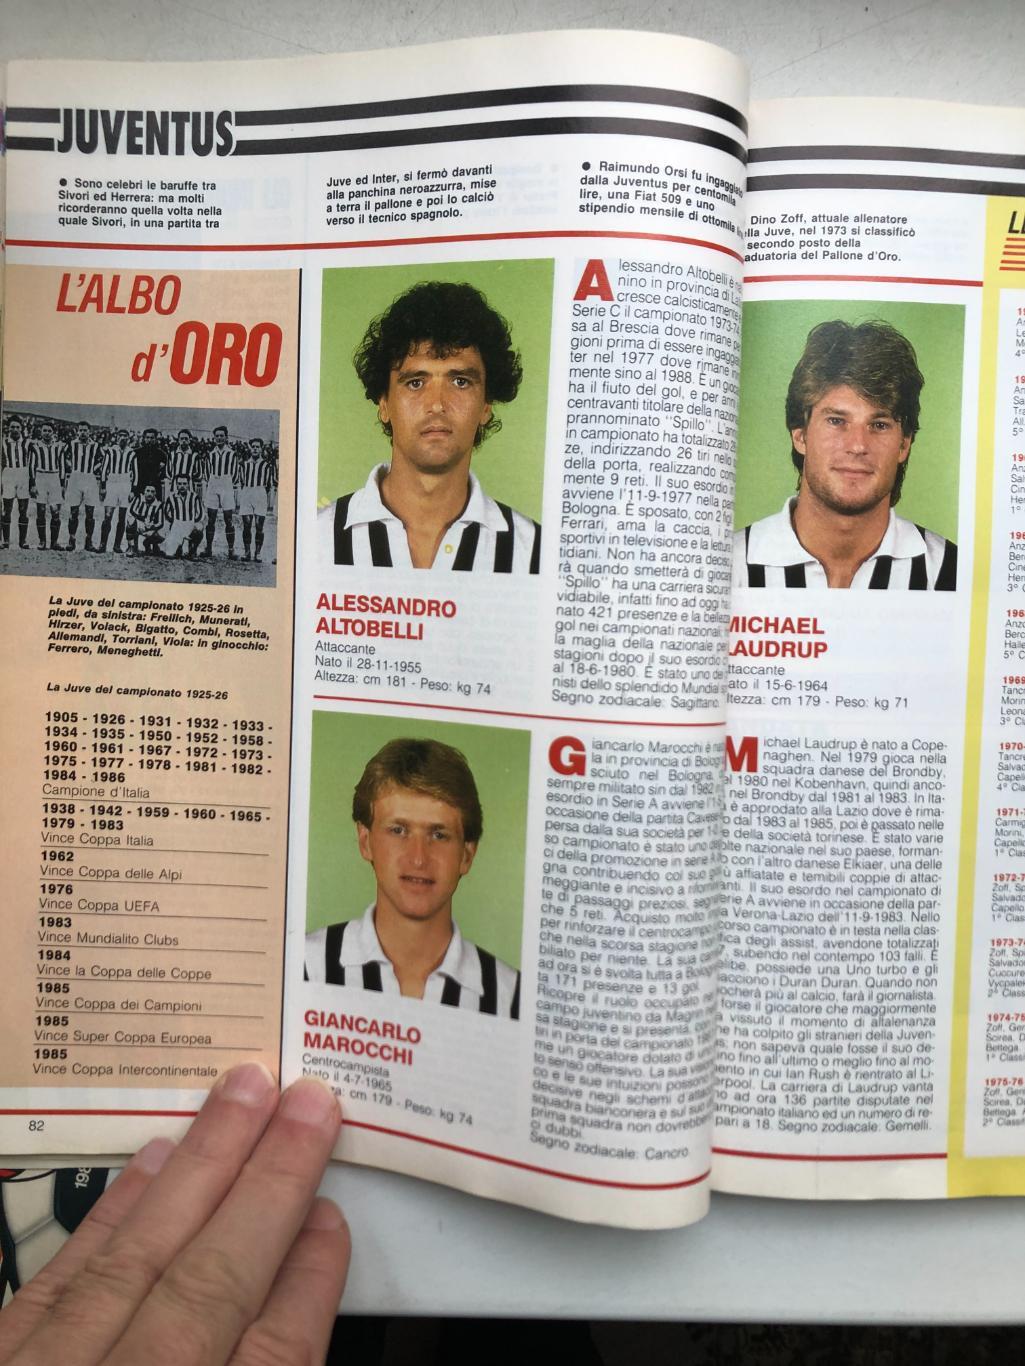 Италия ABC del CALCIO 1988/89 Все три дивизиона, фото команд и игроков, 322 стр. 4